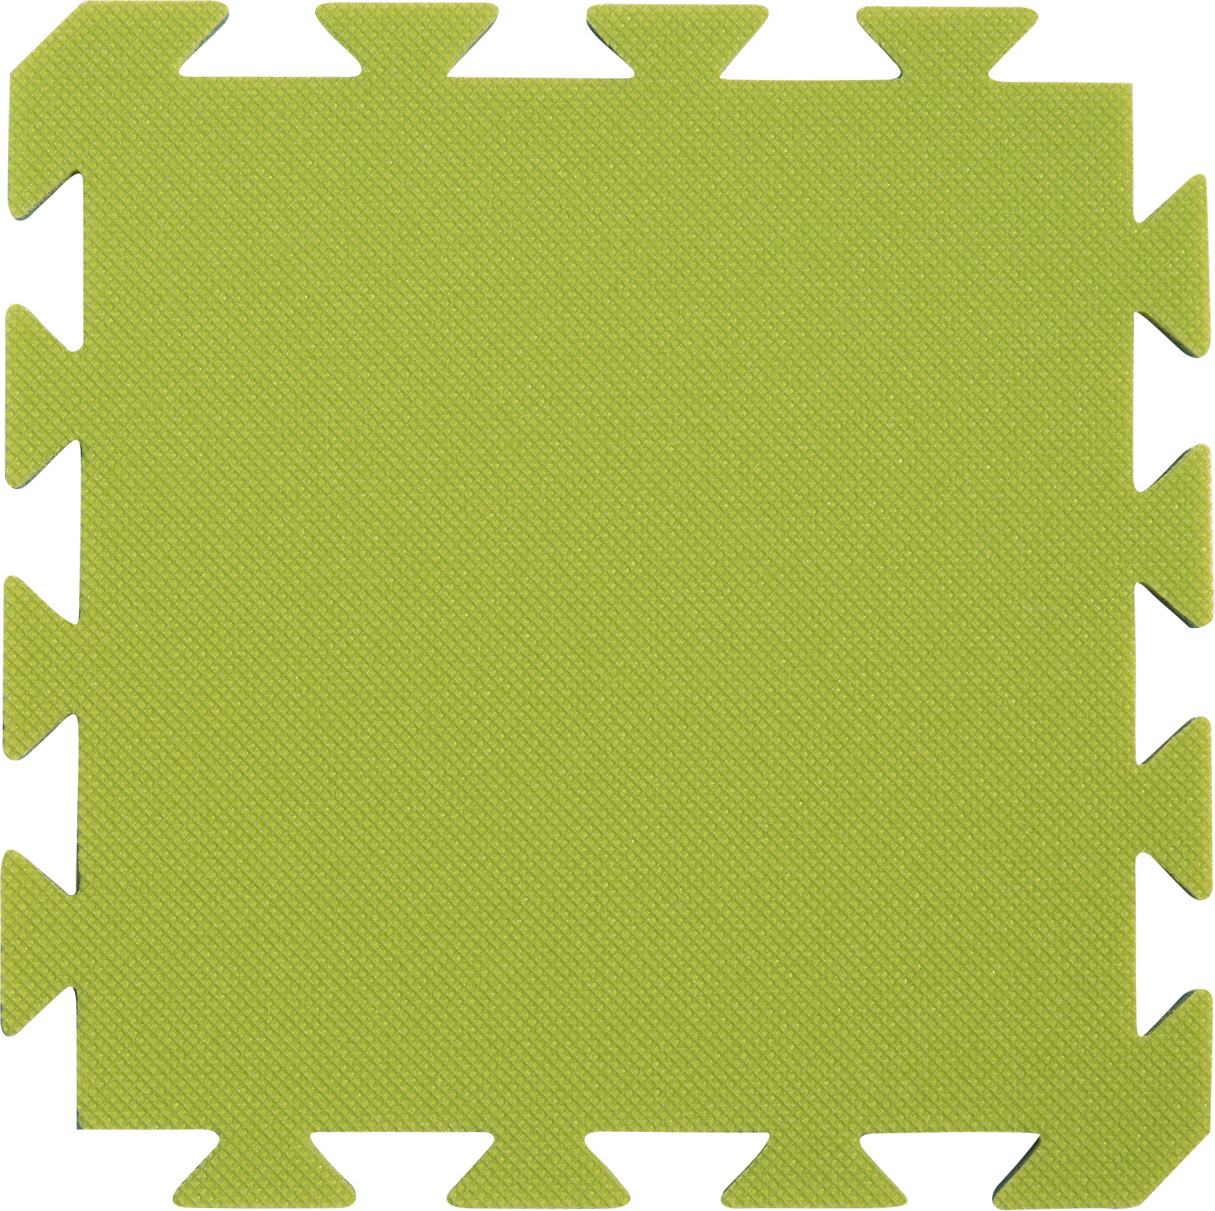 Pěnový koberec YATE světle/tmavě zelená 29x29x1,2 cm